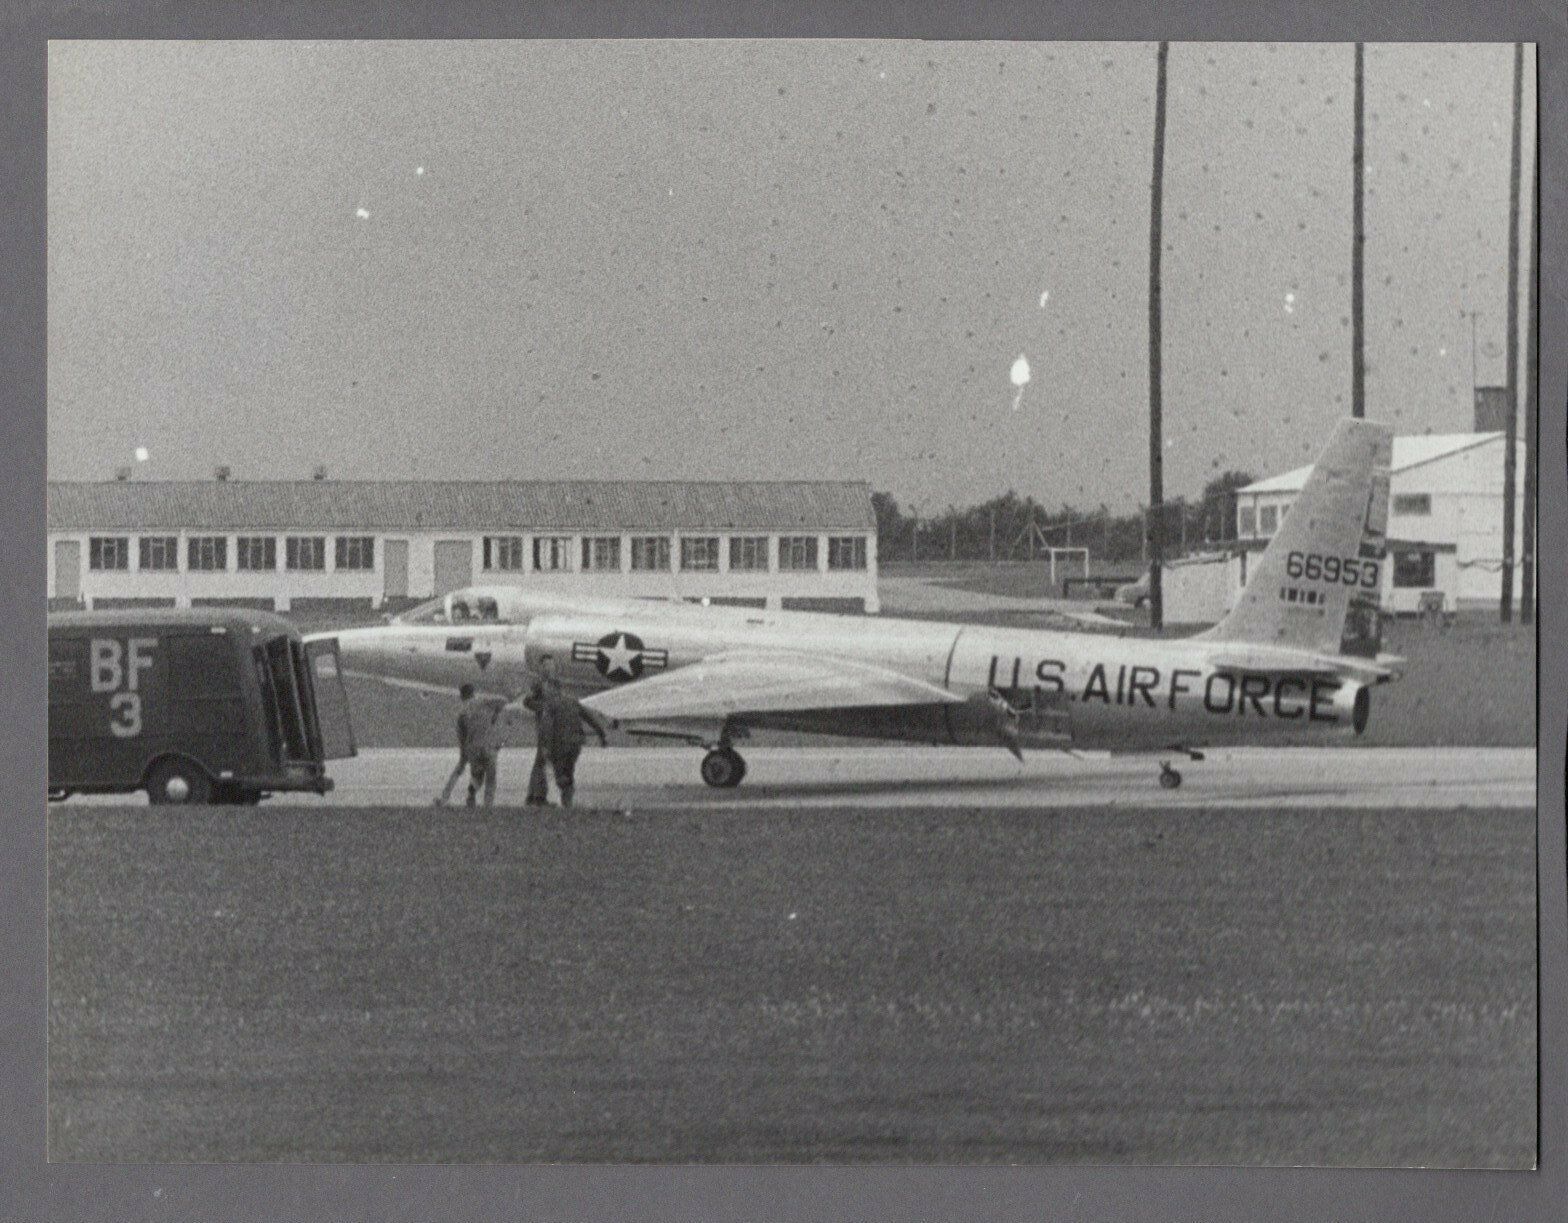 LOCKHEED U-2 LARGE VINTAGE ORIGINAL KEYSTONE PRESS PHOTO US AIR FORCE 1962